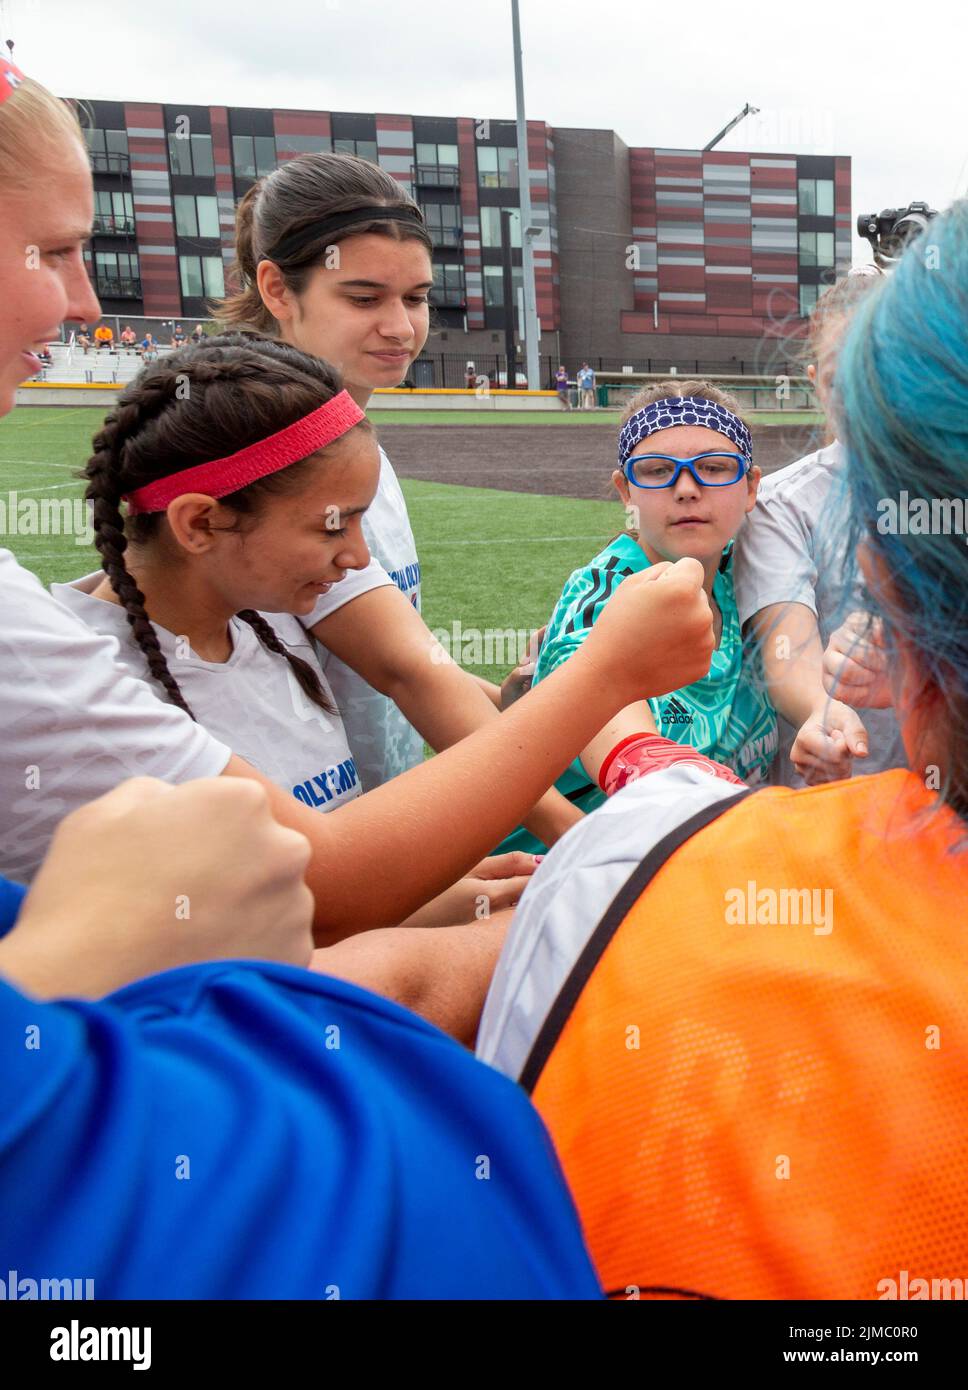 Detroit, Michigan - Spieler der US-Frauenmannschaft beim Unified Cup-Fußballturnier der Special Olympics huddeln vor ihrer Matte Stockfoto